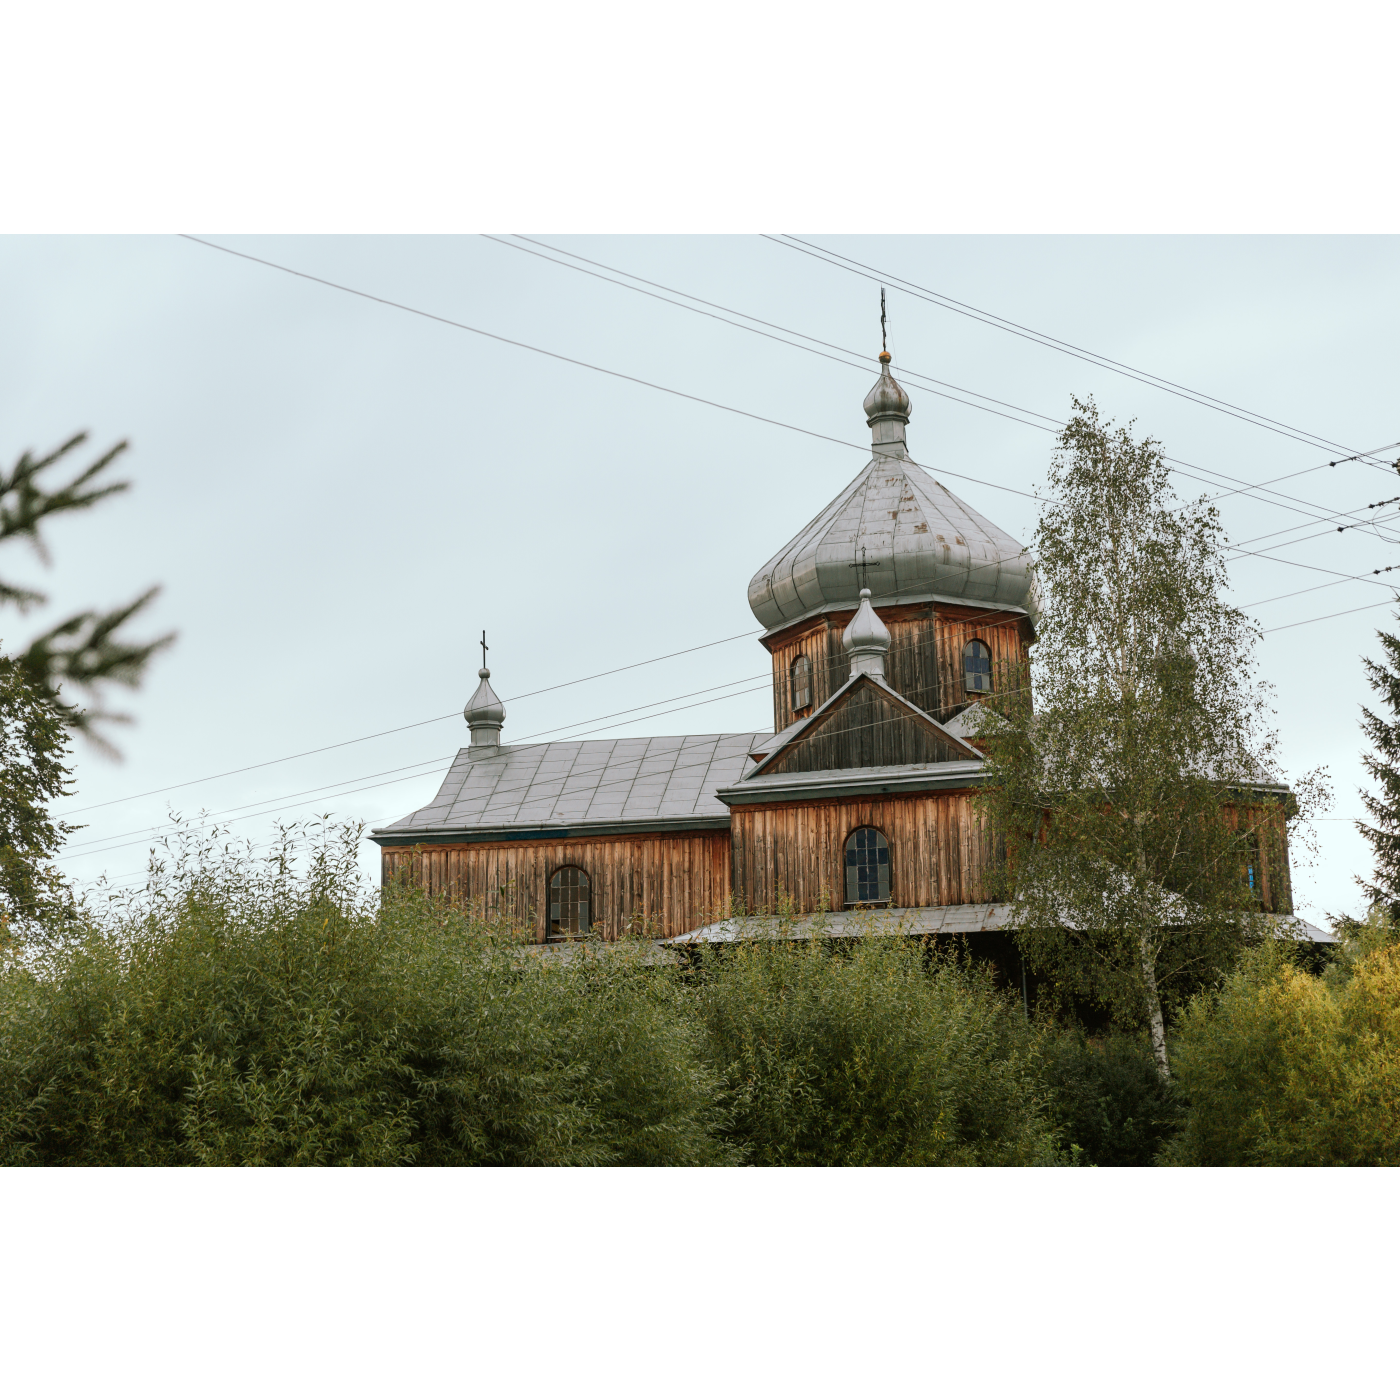 Drewniana cerkiew z jedną główną kopułą z szarym dachem, wokół zielone drzewa